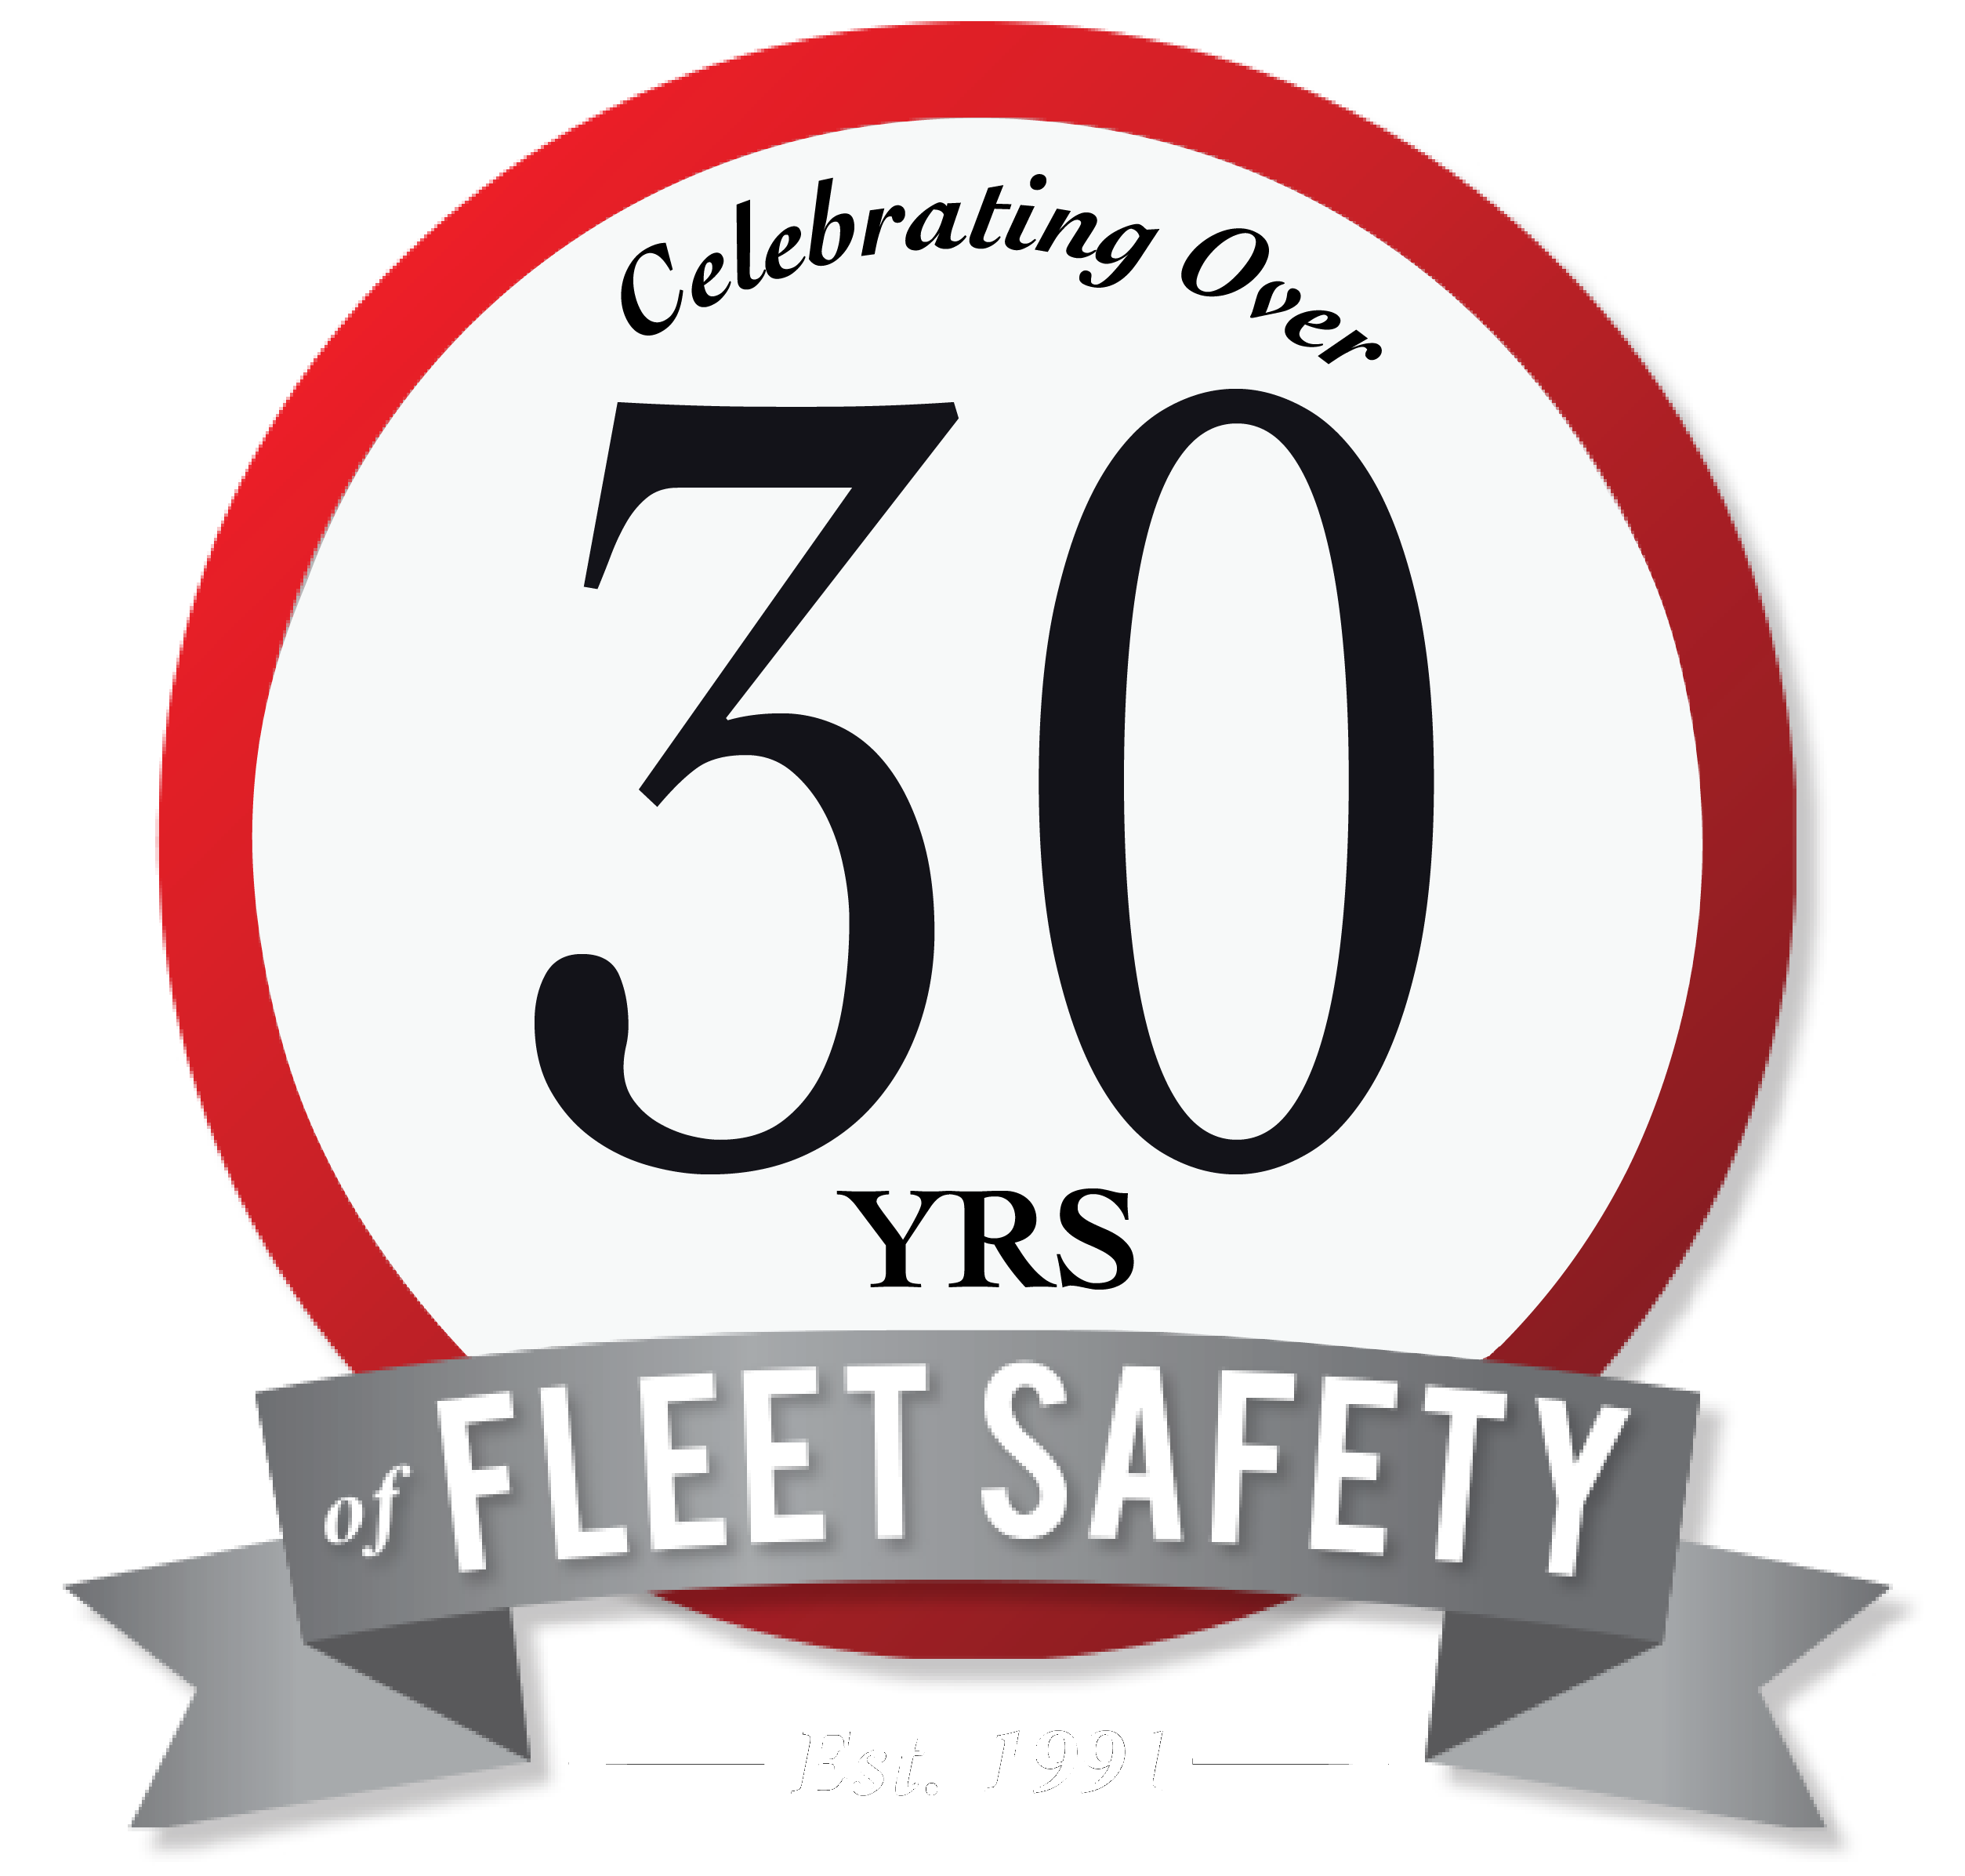 Safety Alert Fleet Safety Leader 25 Years